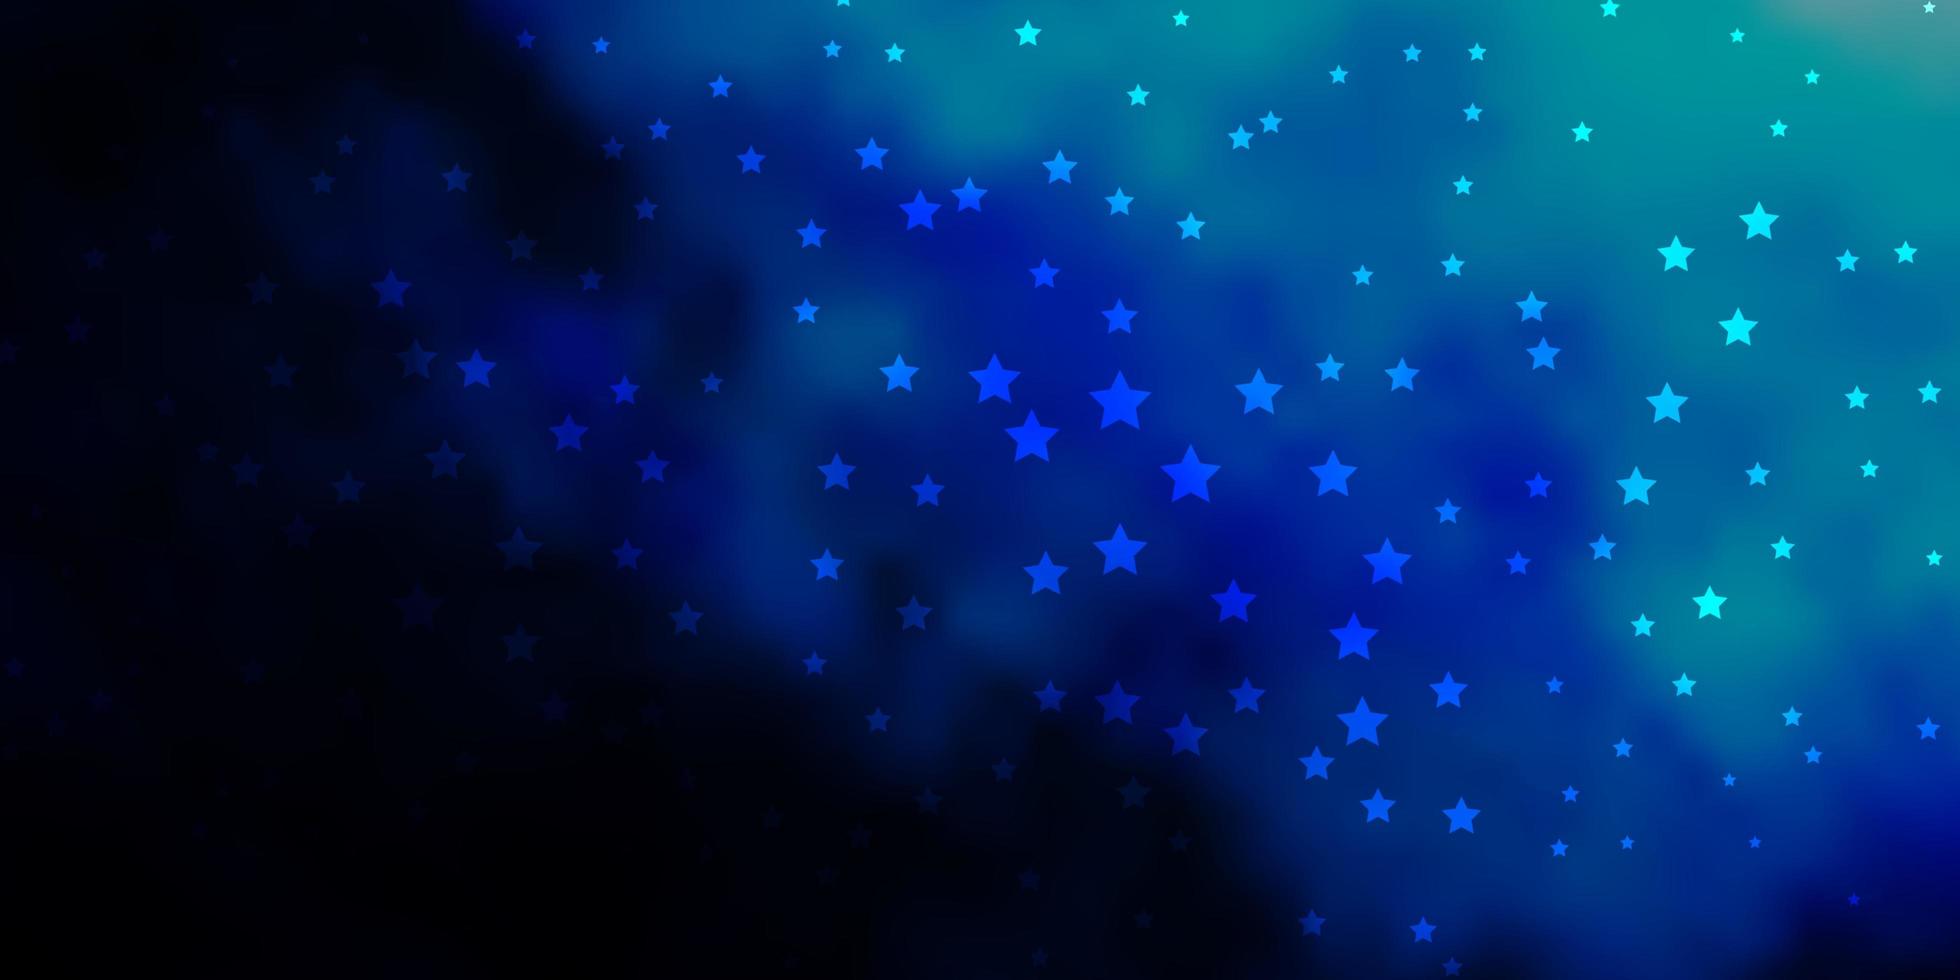 trama vettoriale blu scuro con bellissime stelle. illustrazione decorativa con stelle sul modello astratto. design per la tua promozione aziendale.